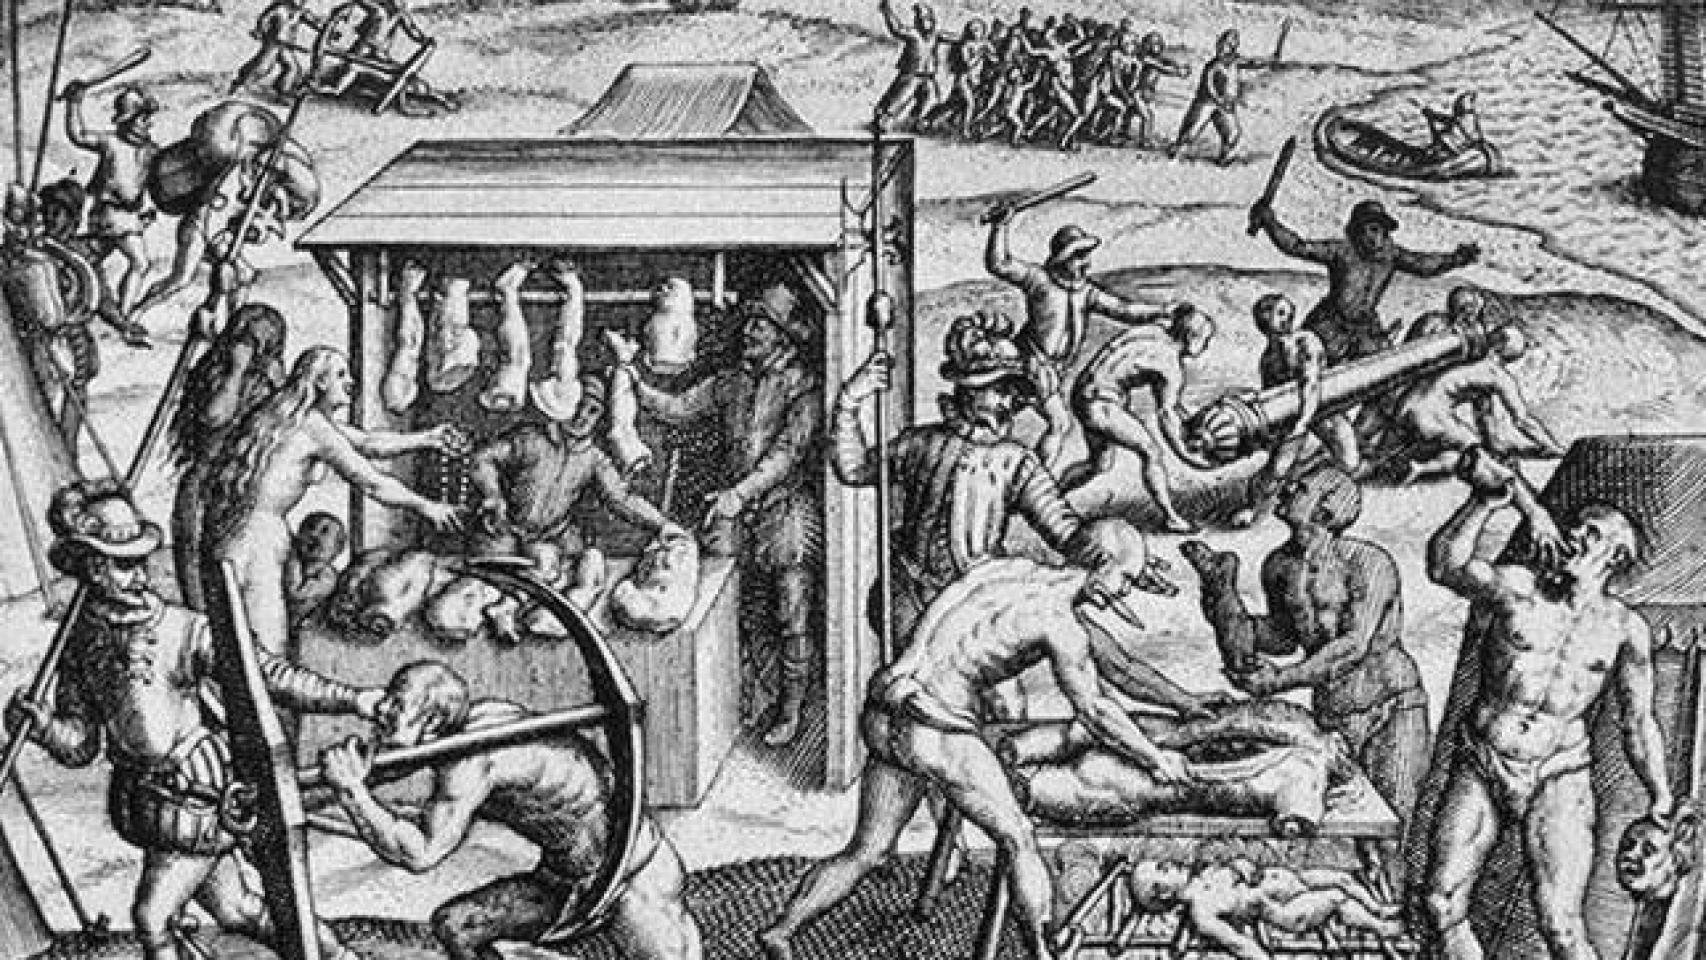 Grabado de las supuestas masacres de los españoles durante la conquista de América.